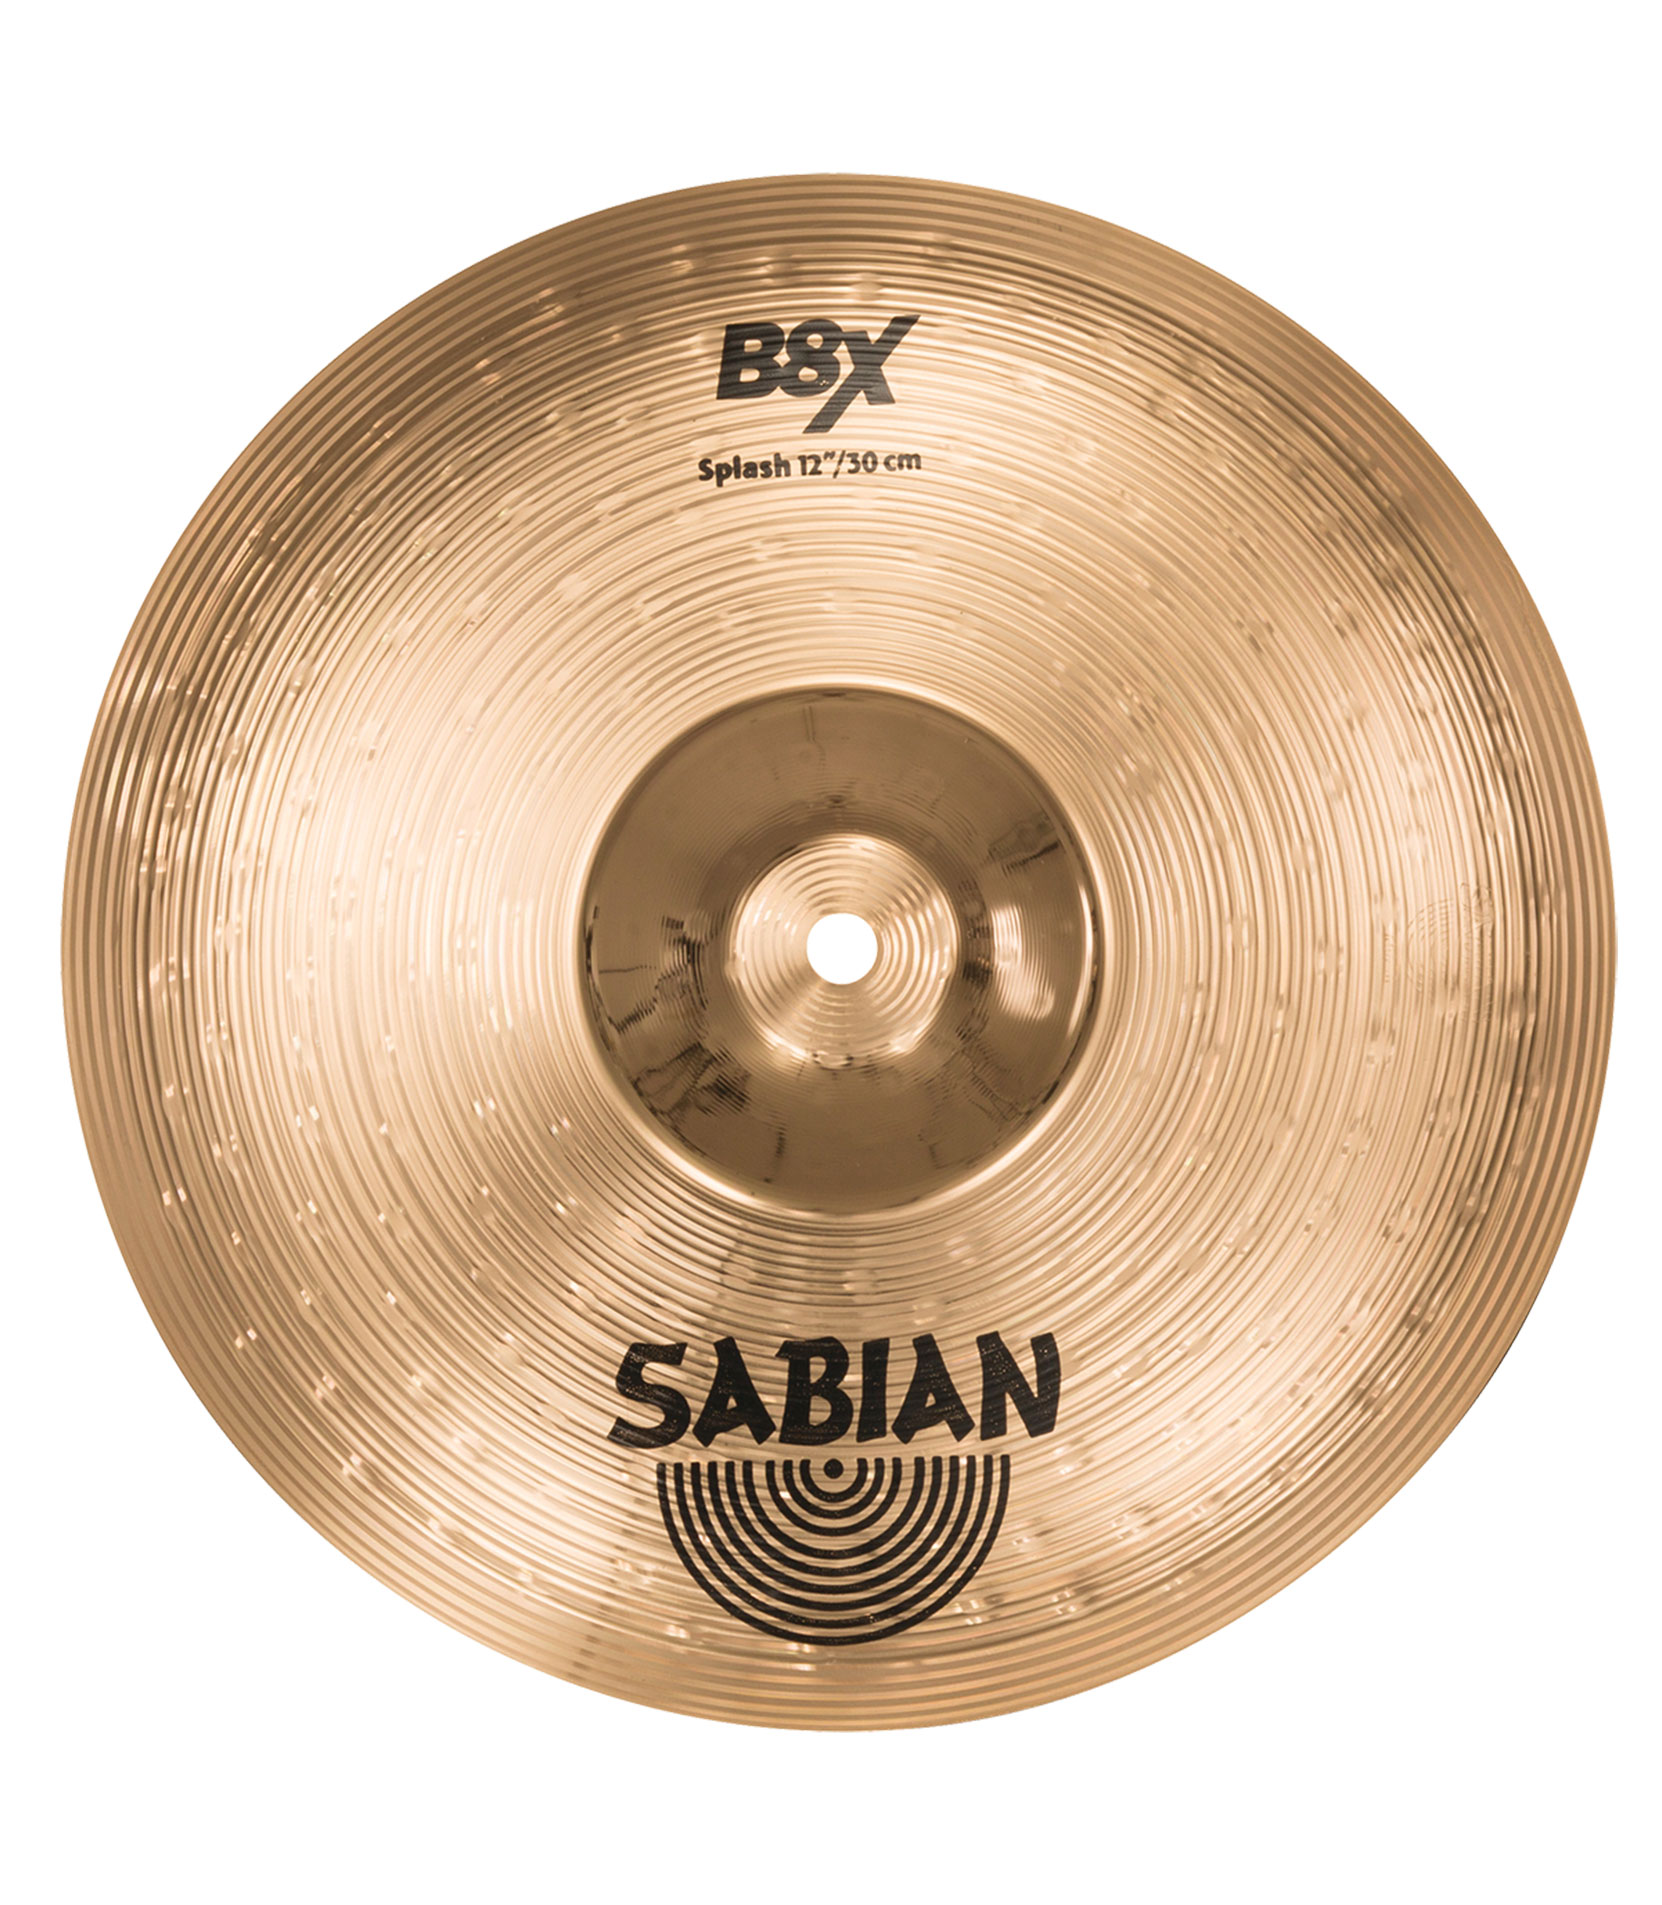 buy sabian 12 b8x splash